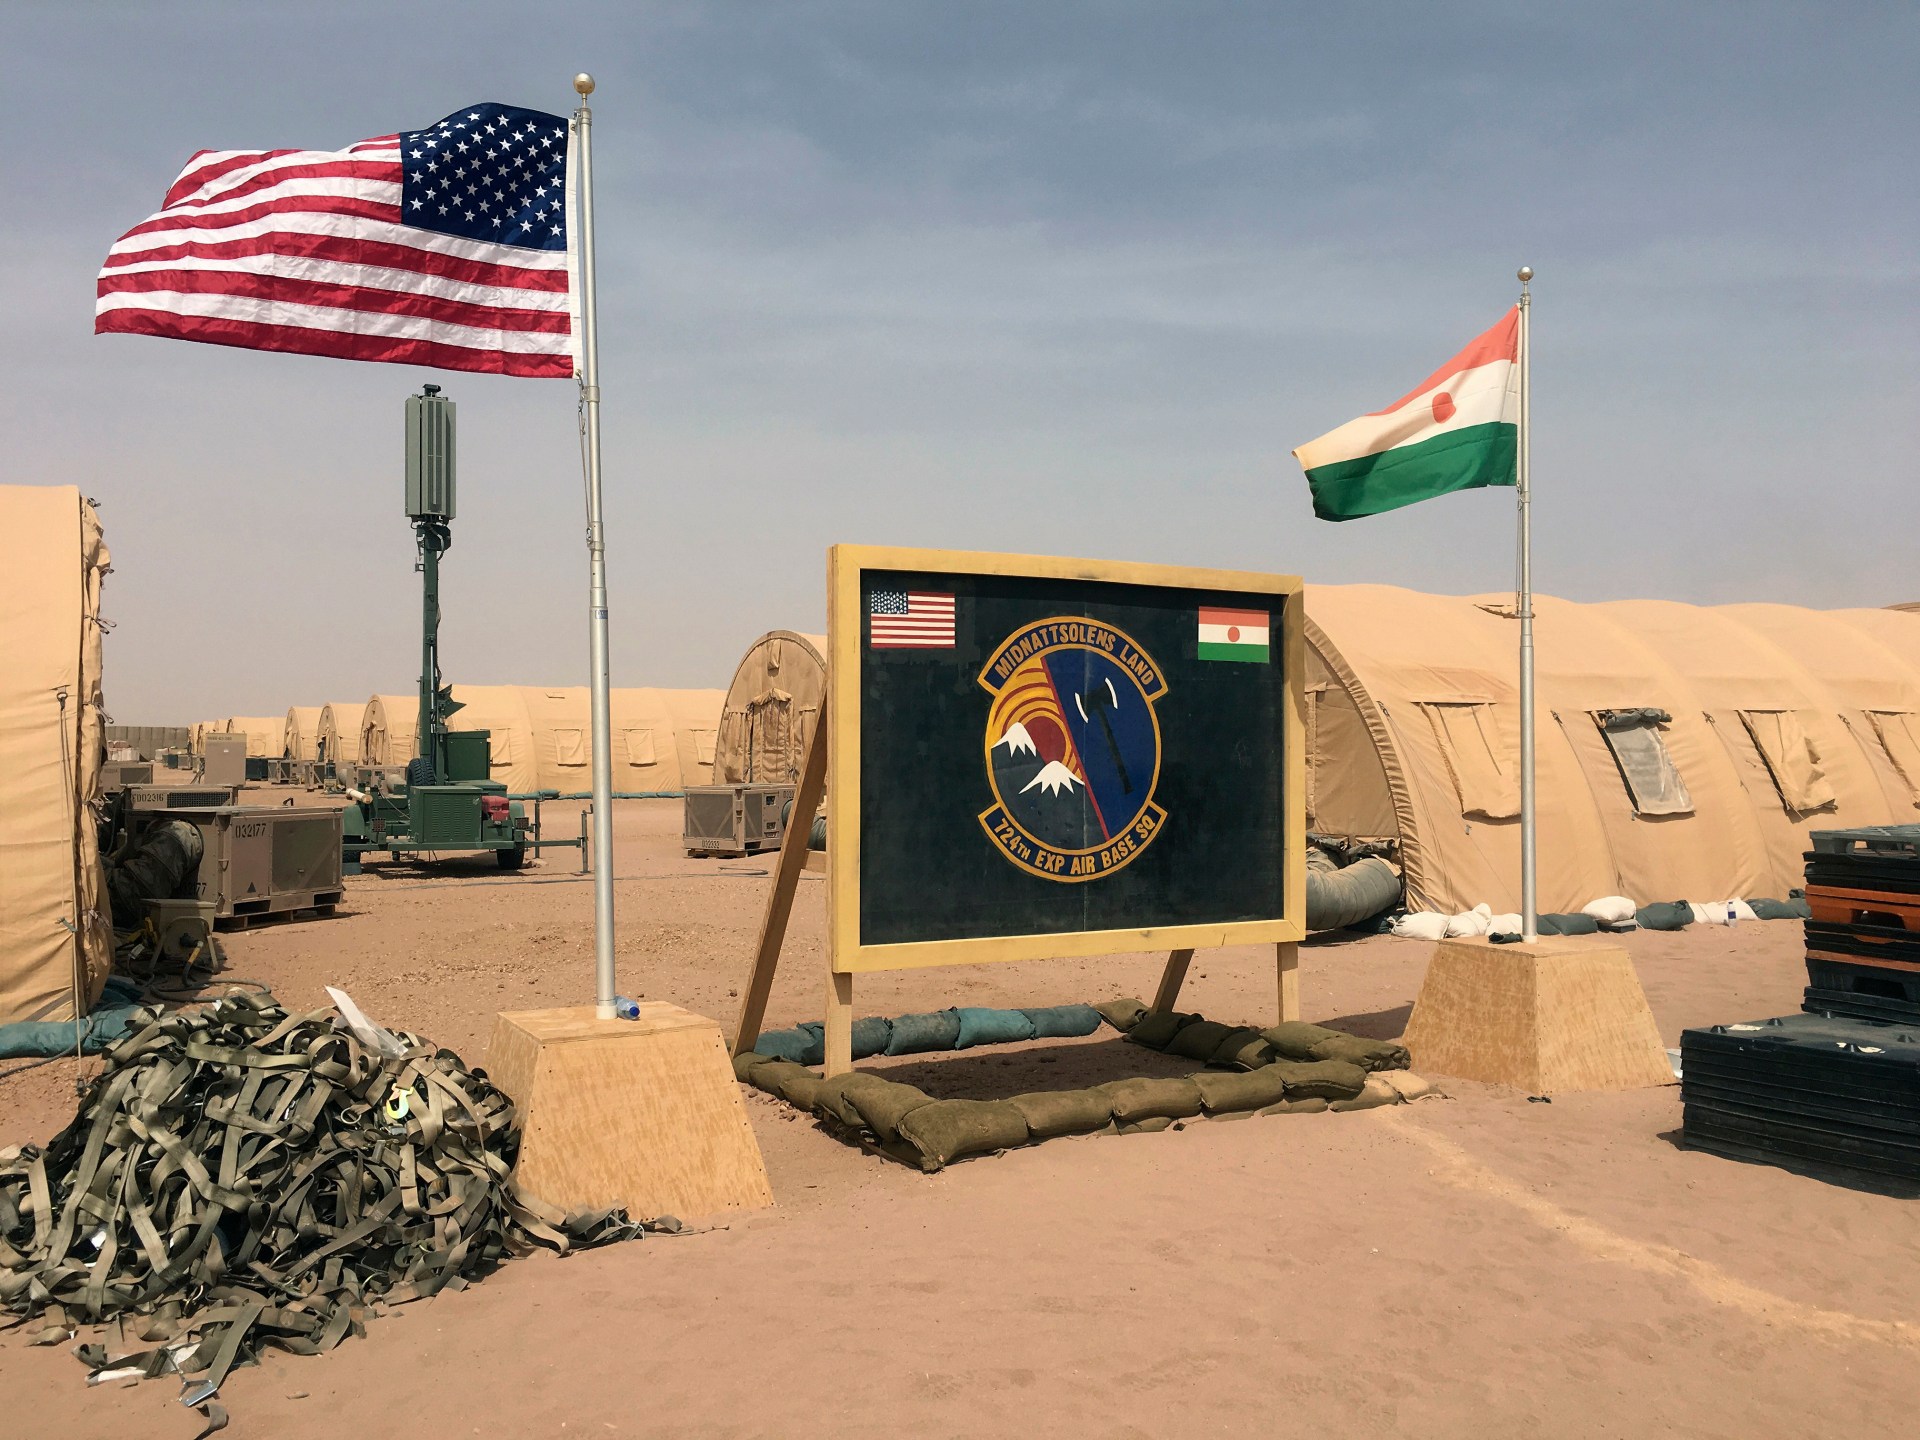 قوات روسية تدخل قاعدة في النيجر تتمركز فيها قوات أميركية | أخبار – البوكس نيوز